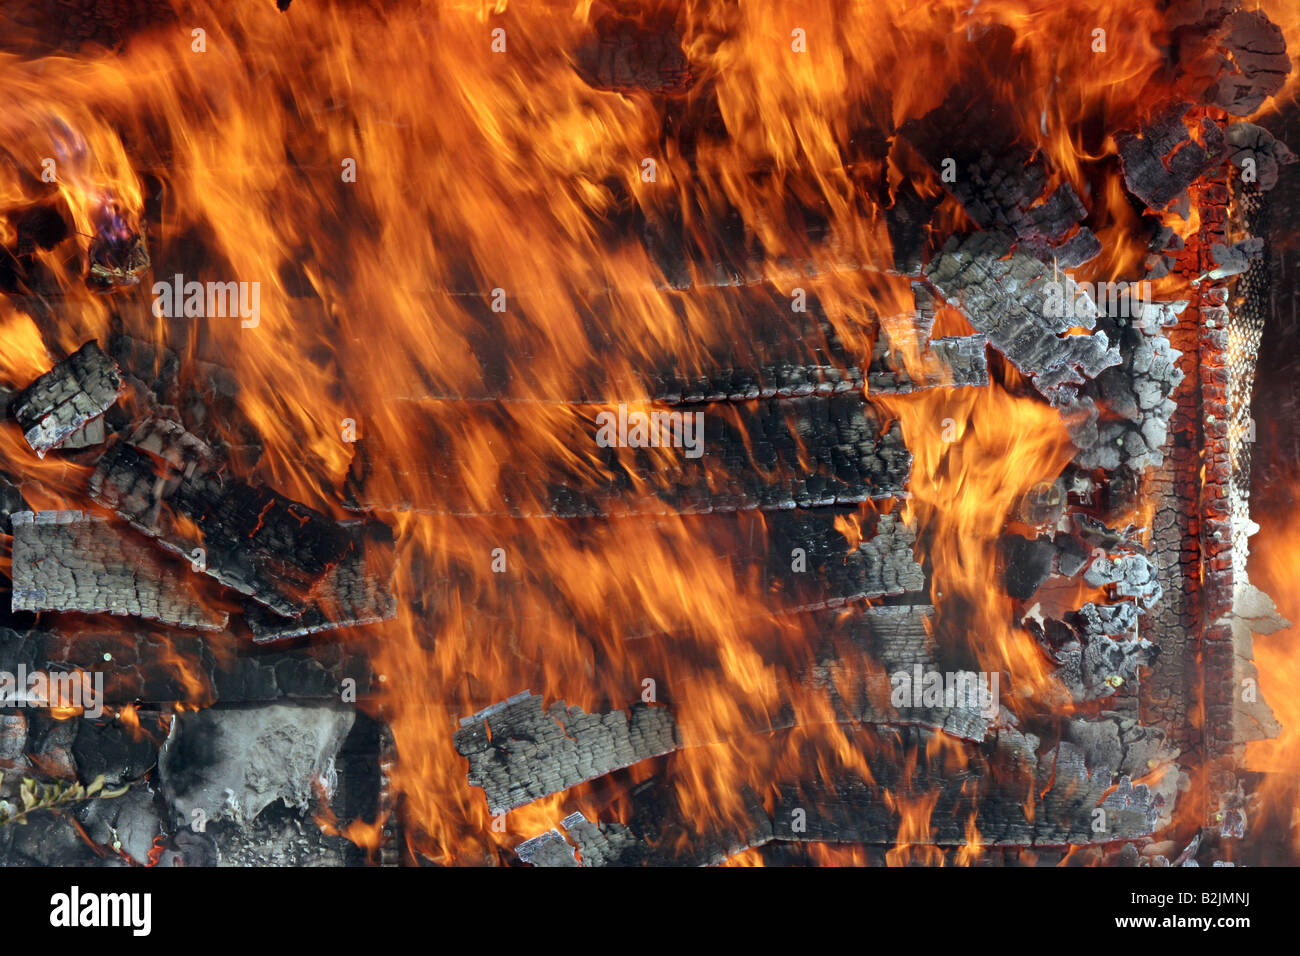 Les parements en bois sur le feu à la maison en brûlant le bâtiment Banque D'Images